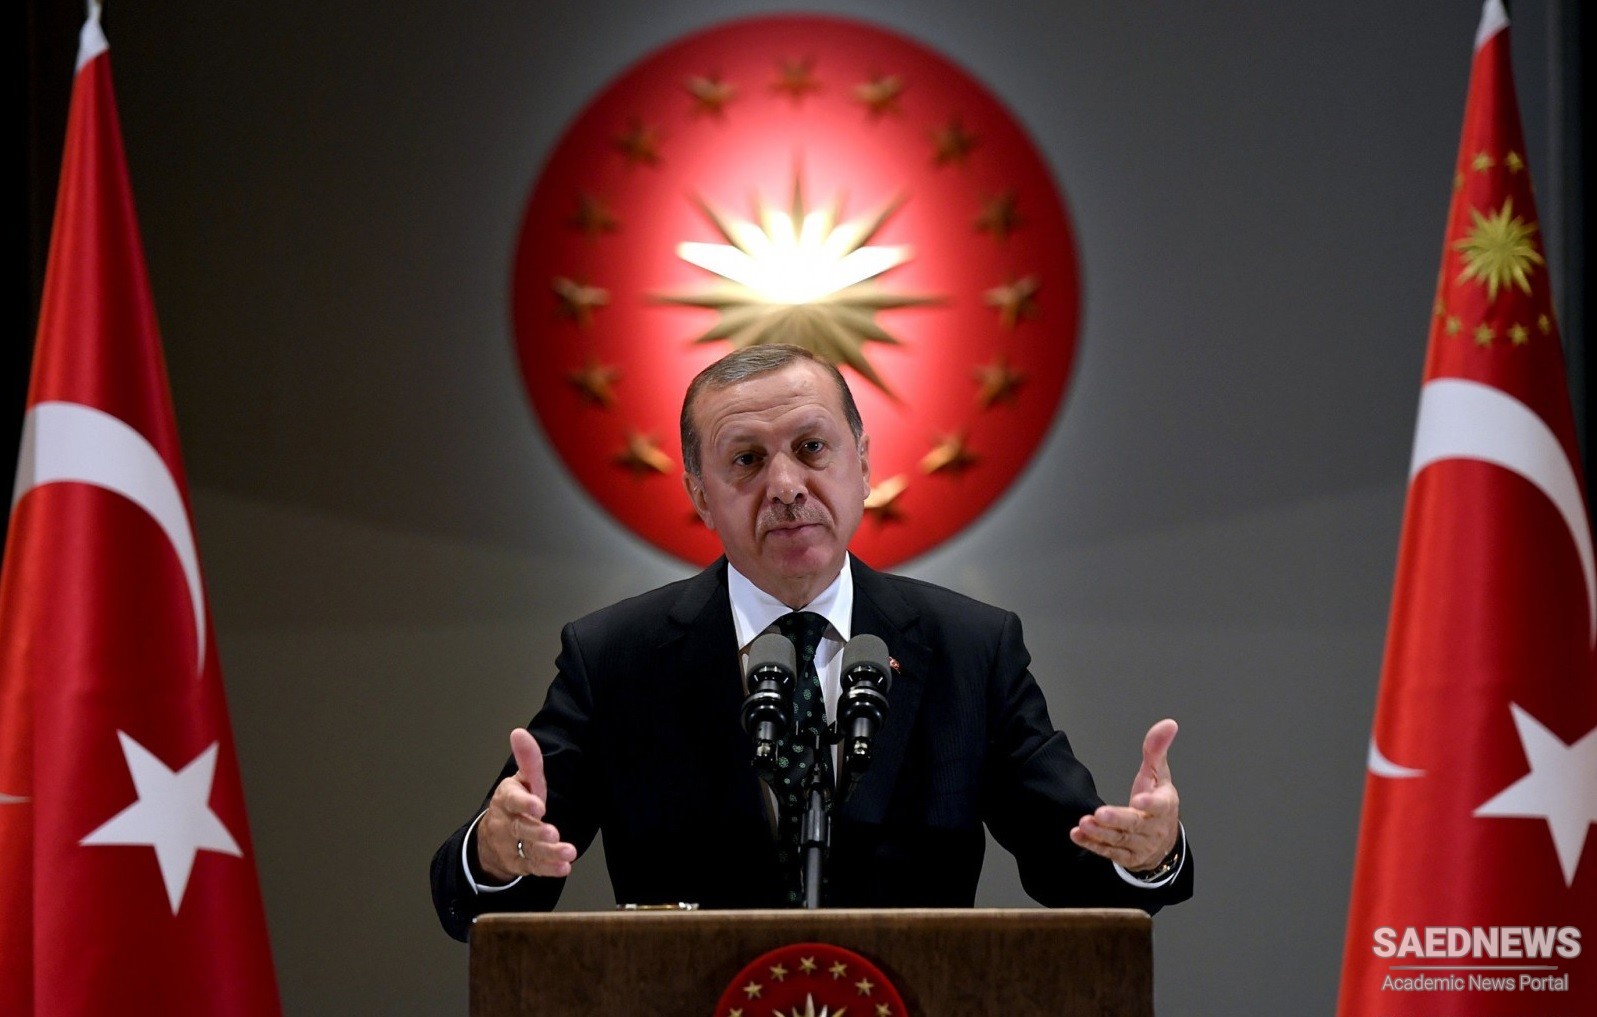 राष्ट्रपति एर्दोगन ने कहा, इज़राइल के साथ तुर्की संबंधों में सुधार चाहता है